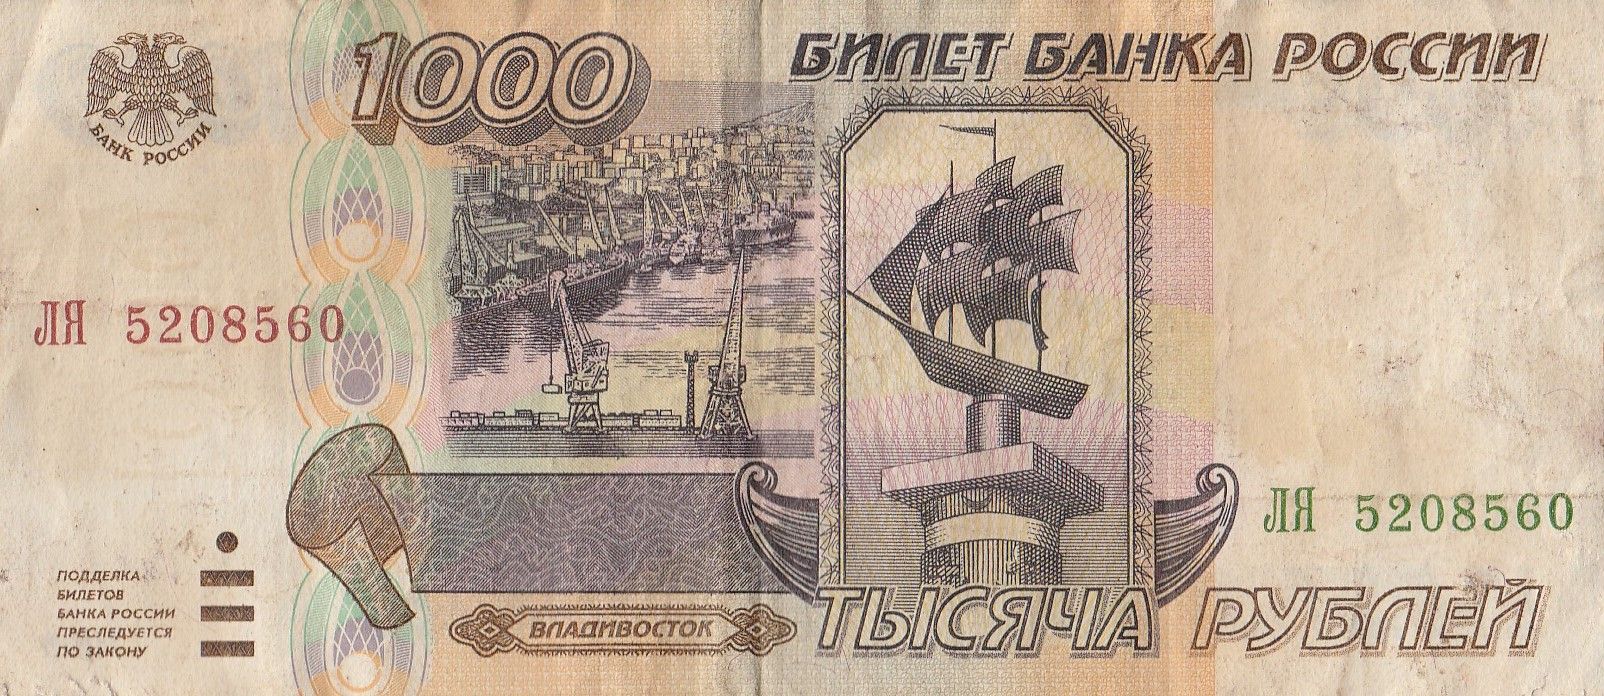 1000 Купюра 1995 года. Купюра 1000 рублей 1995. Купюра 1000 рублей 1995 года. Банкнота 1000 рублей.